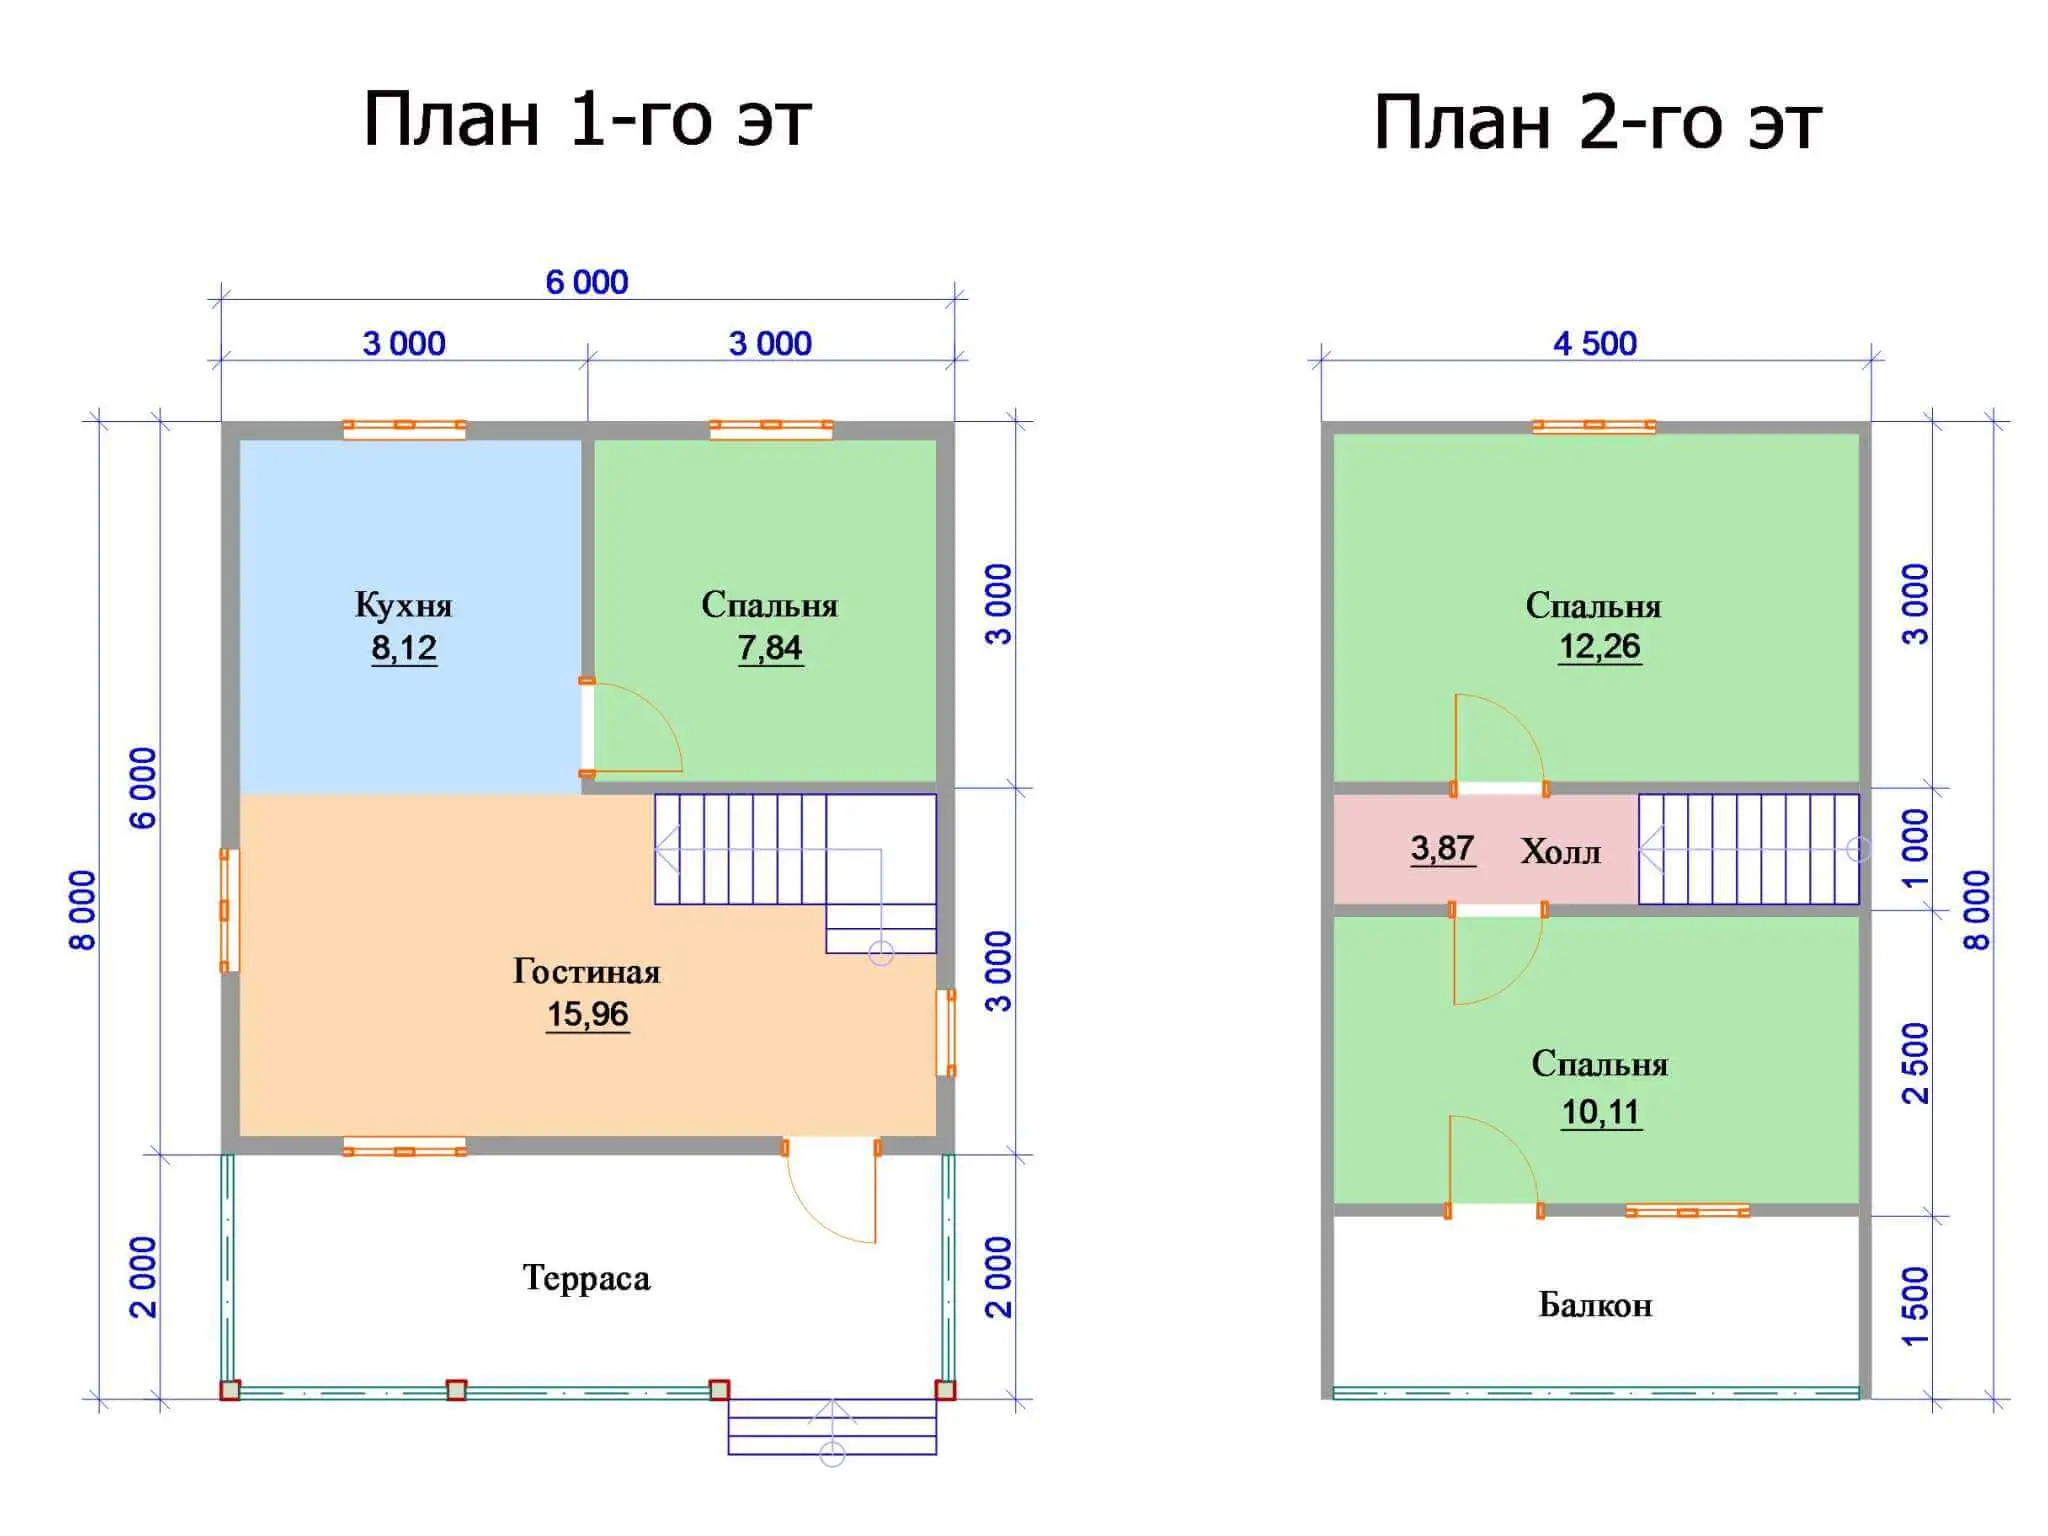 Планировка 2-этажного жилого строения